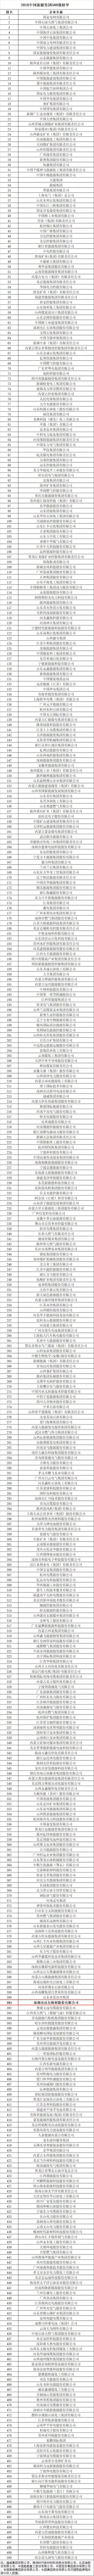 沃尔核材荣登2018中国能源集团500强榜单3.jpg